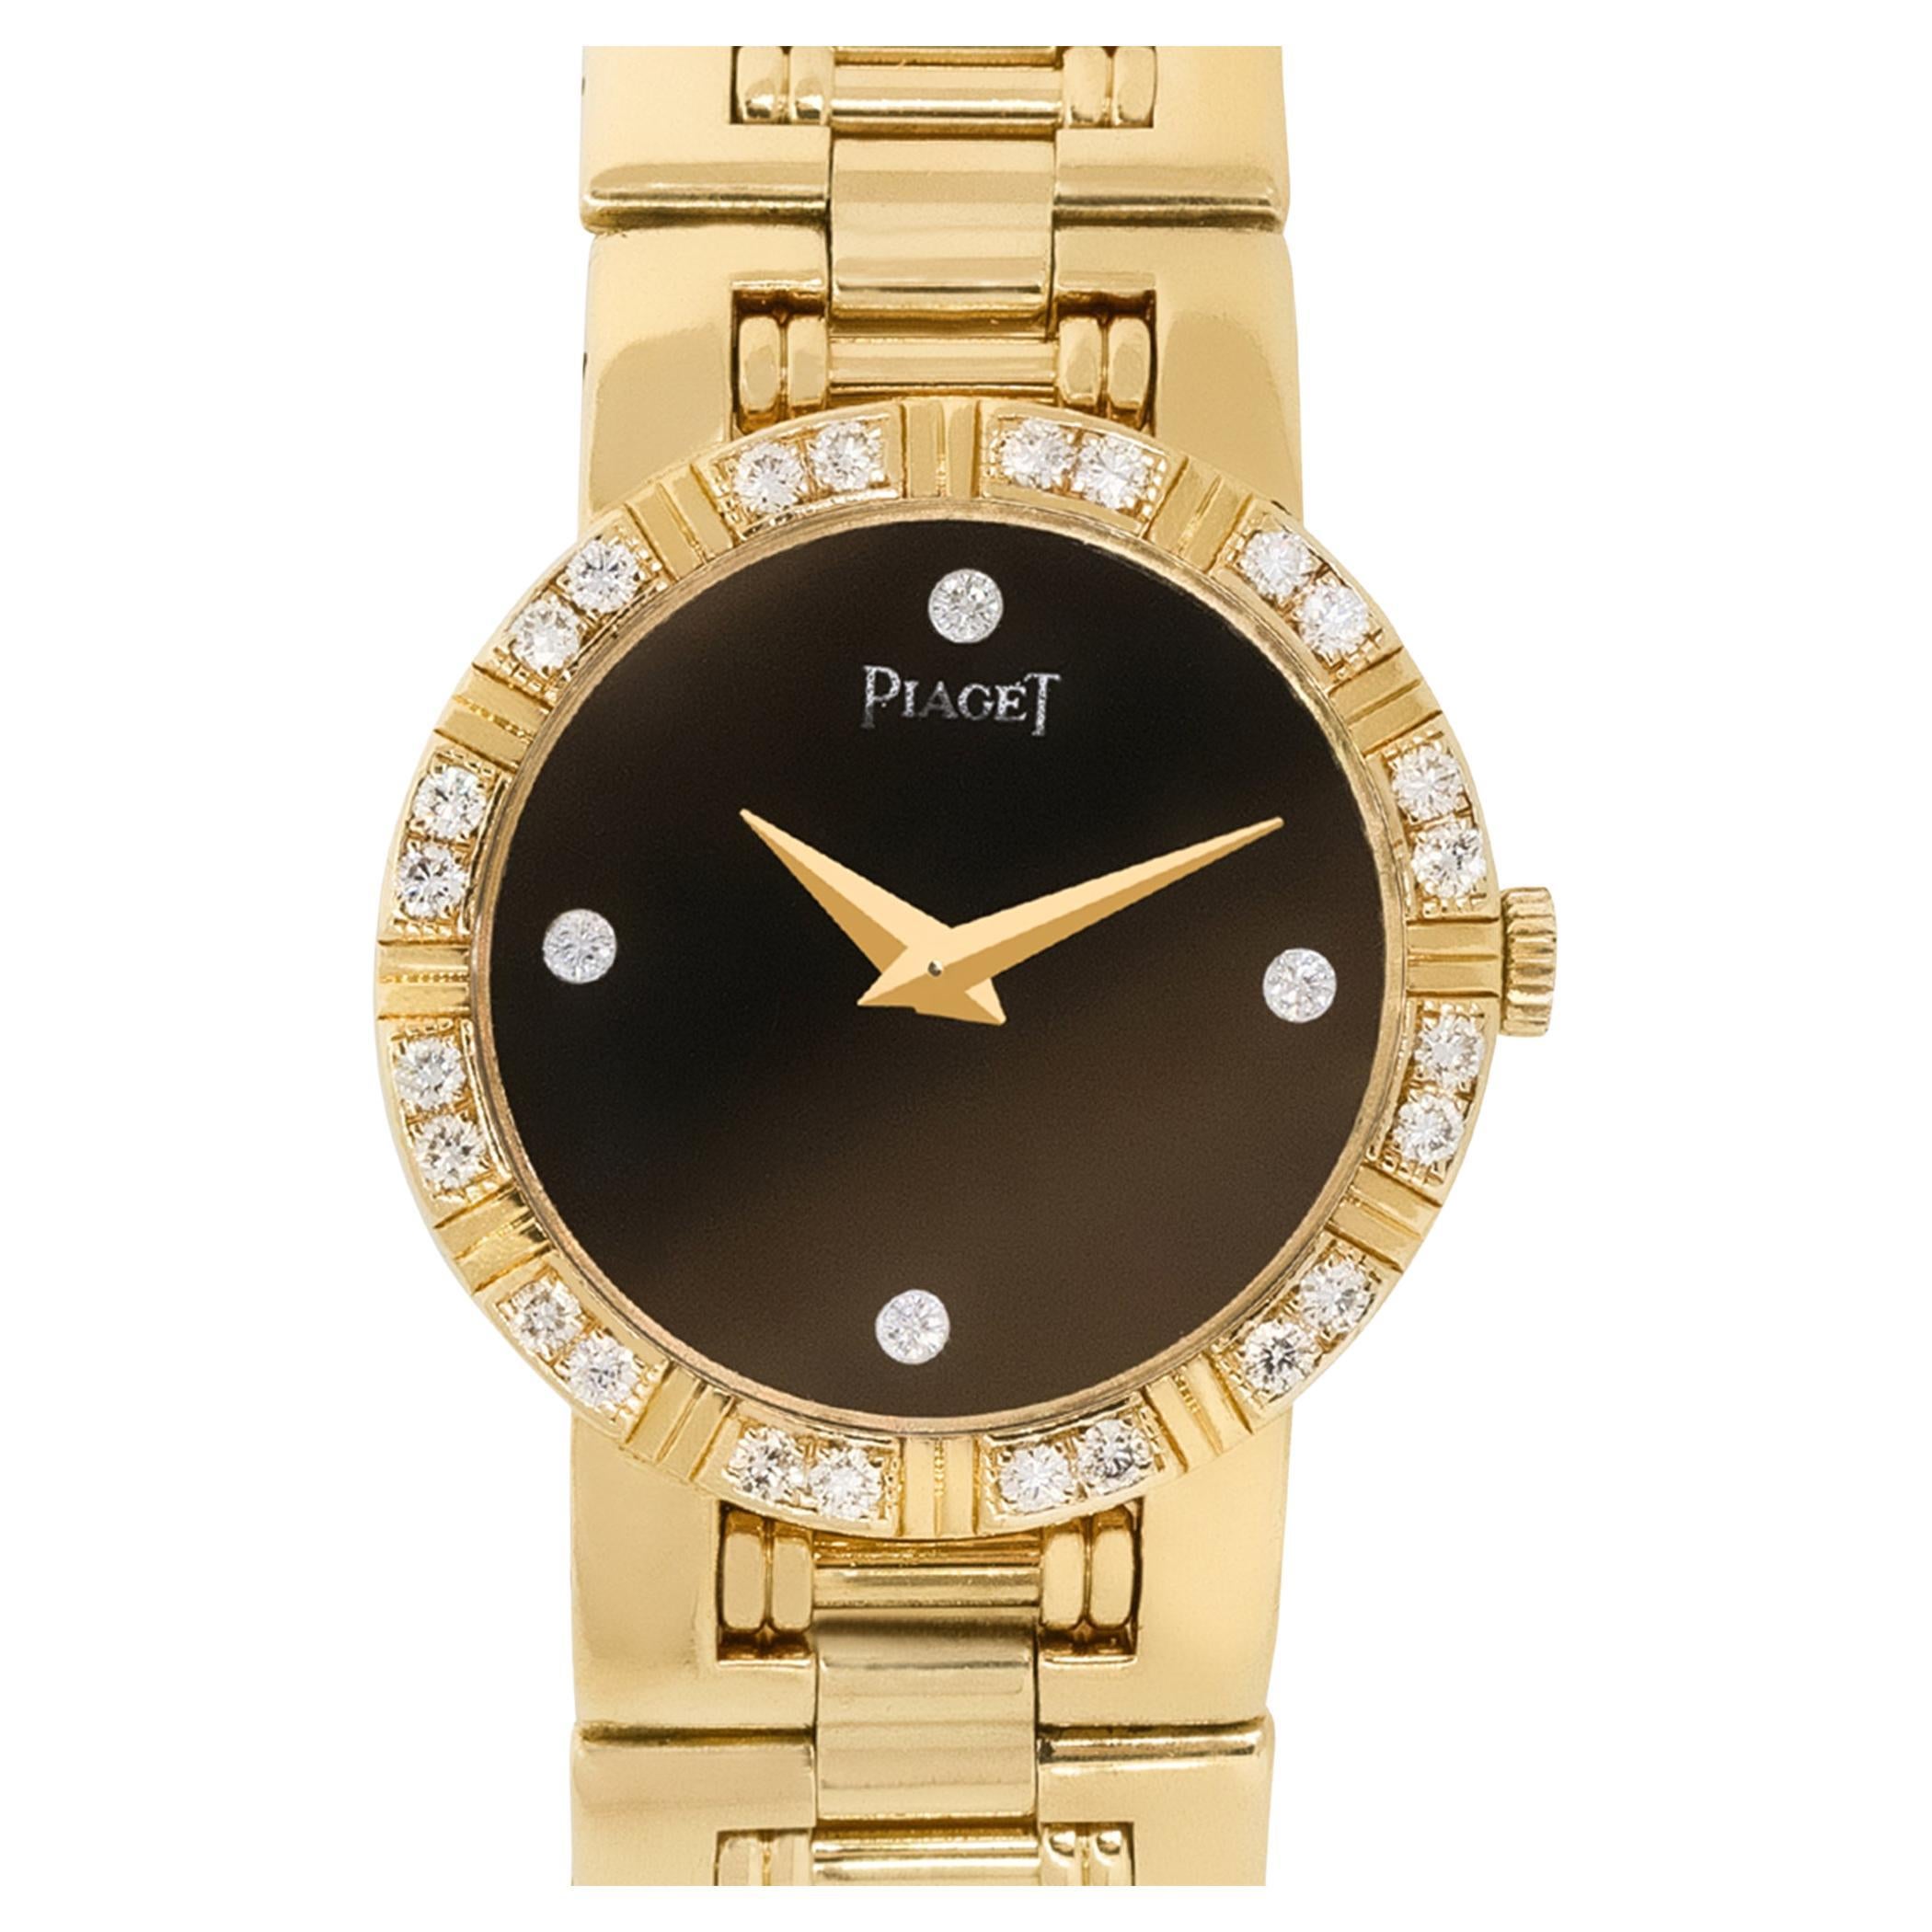 Piaget 80564 18 Karat Black Diamond Dial Ladies Watch In Stock